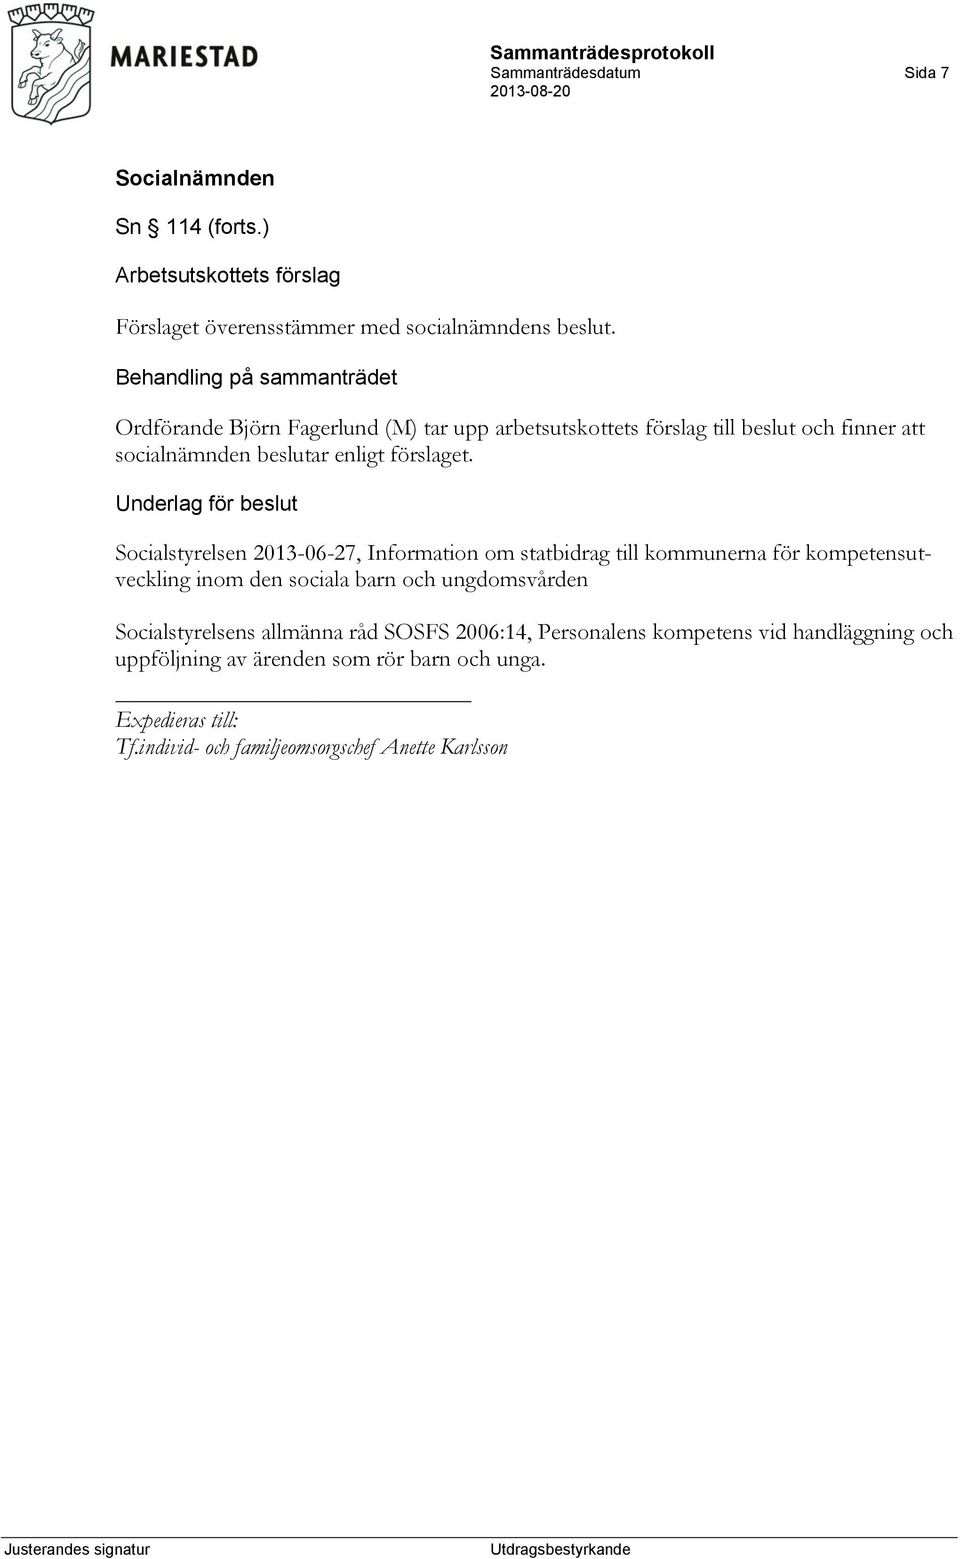 Underlag för beslut Socialstyrelsen 2013-06-27, Information om statbidrag till kommunerna för kompetensutveckling inom den sociala barn och ungdomsvården